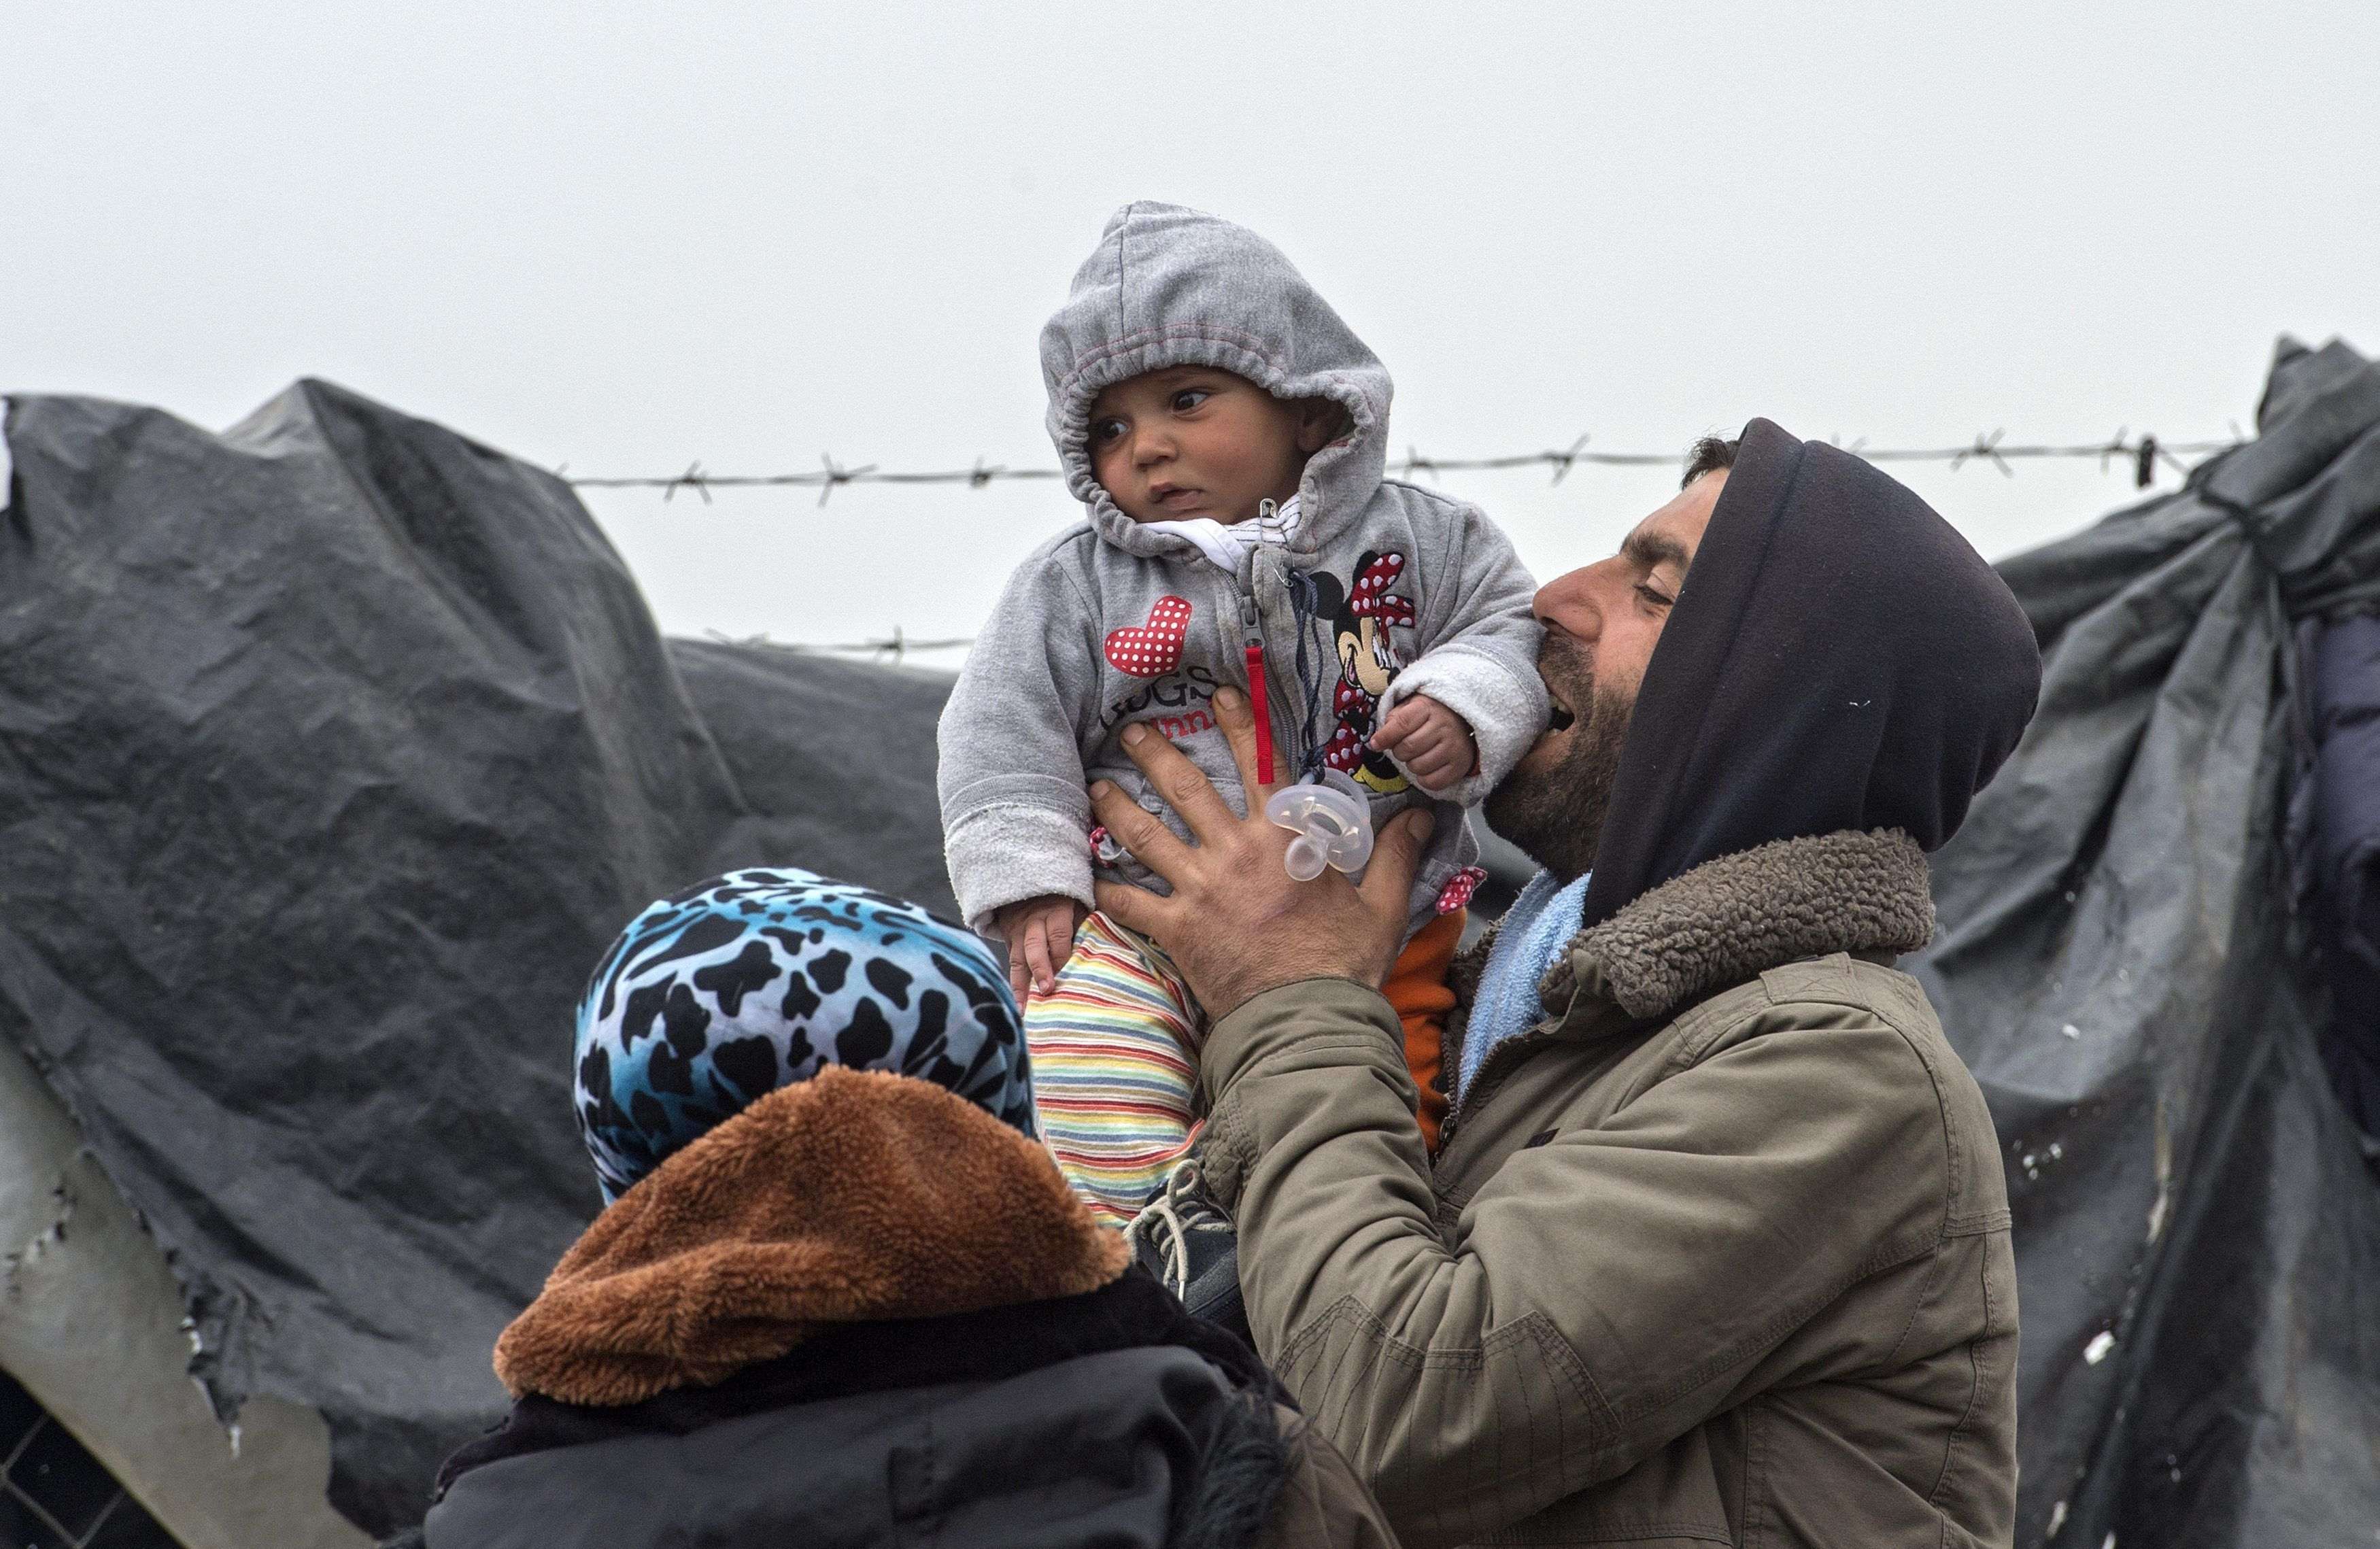 Empieza el retorno de refugiados, a pesar de las dudas legales y humanitarias